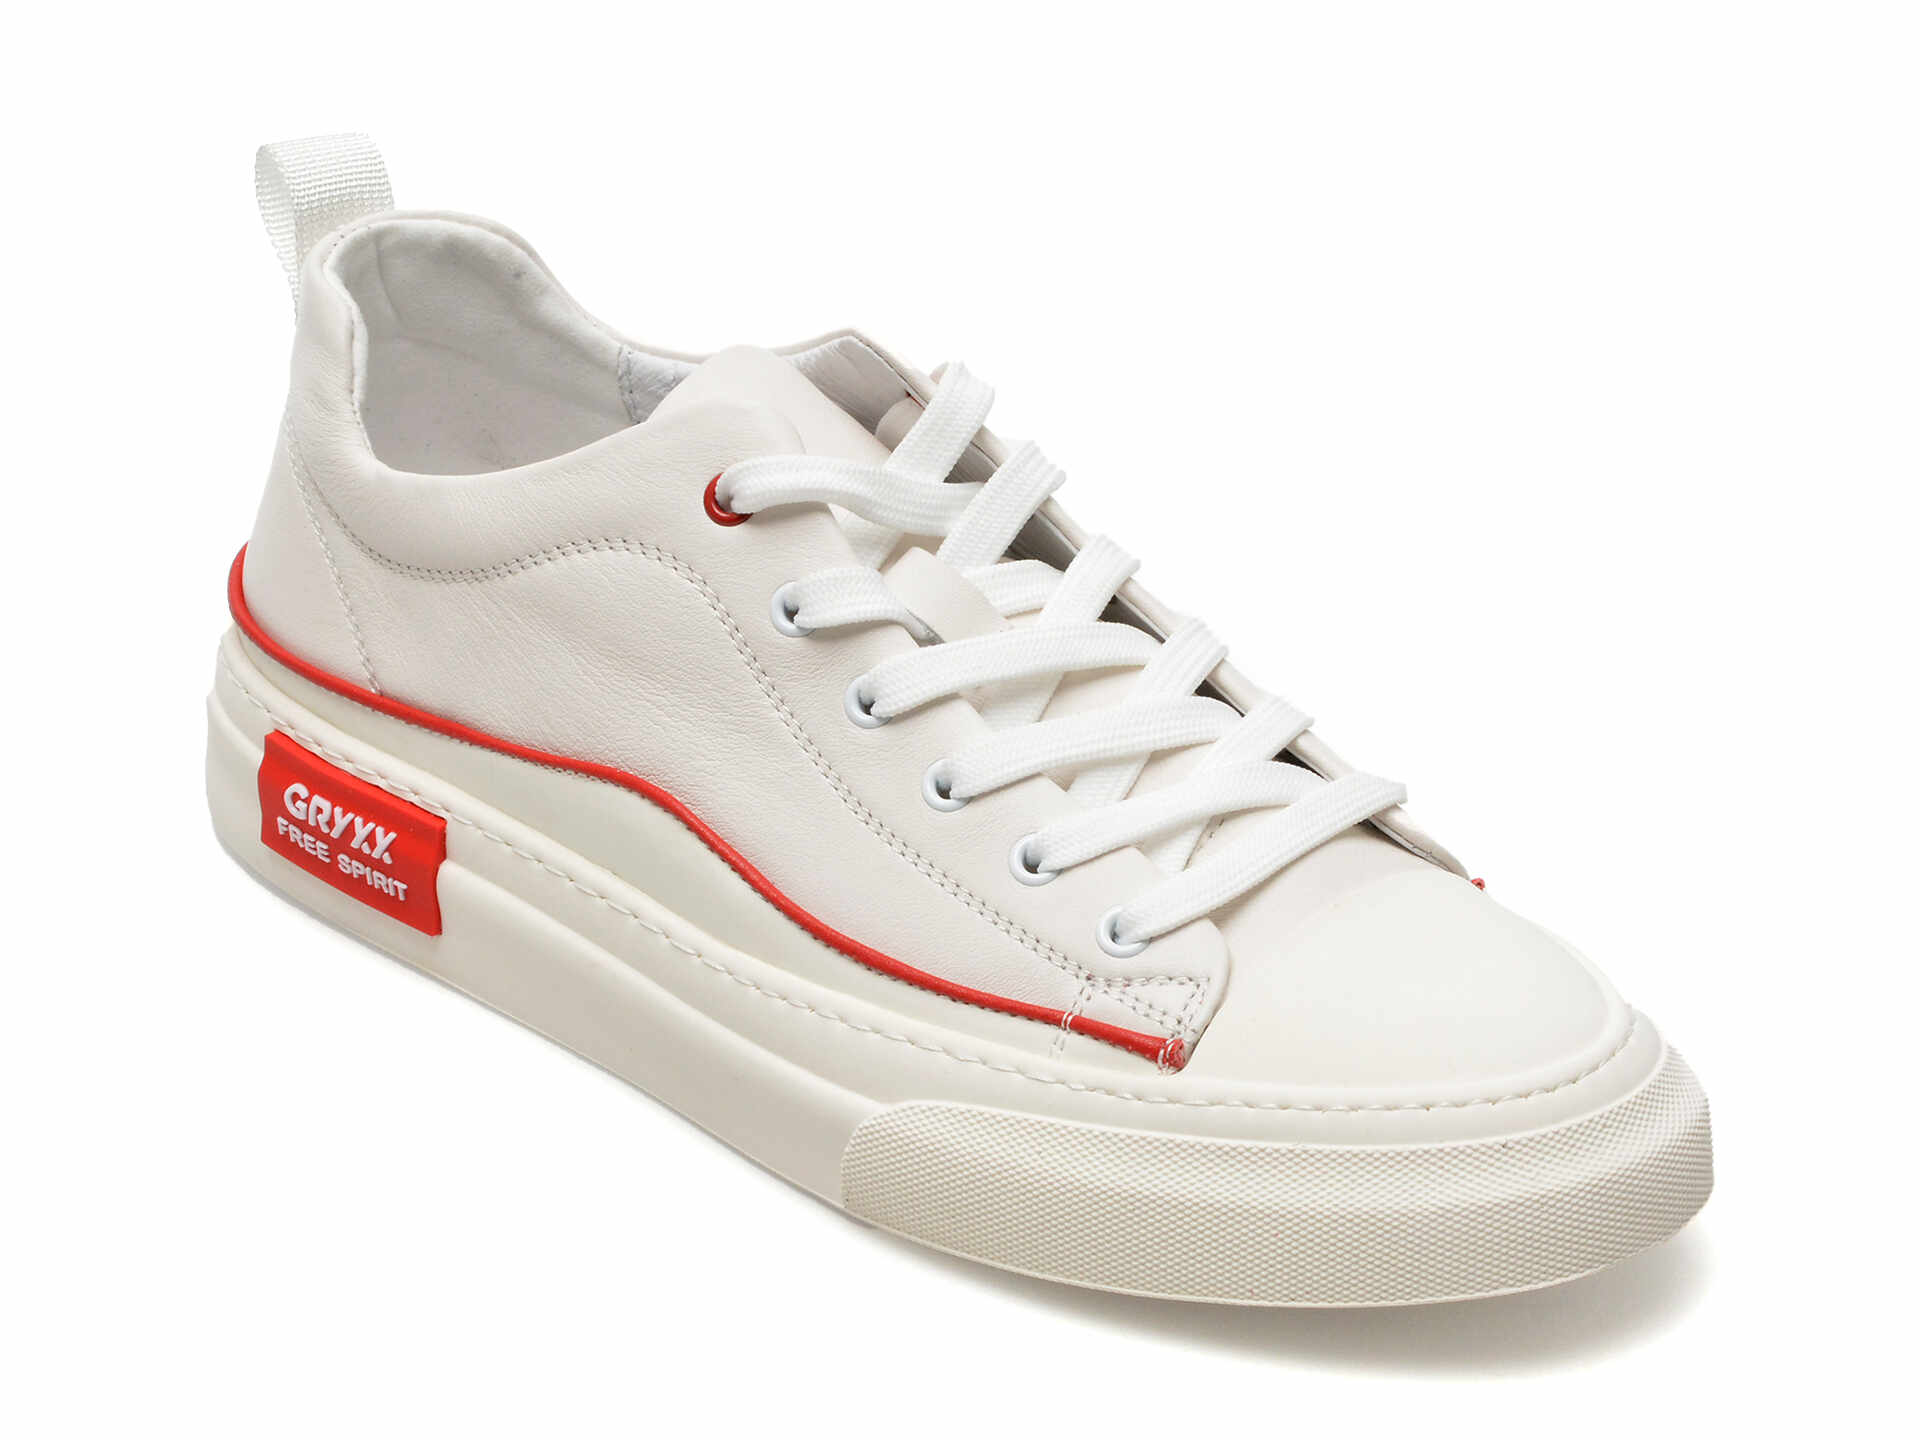 Pantofi GRYXX albi, EE22716, din piele naturala